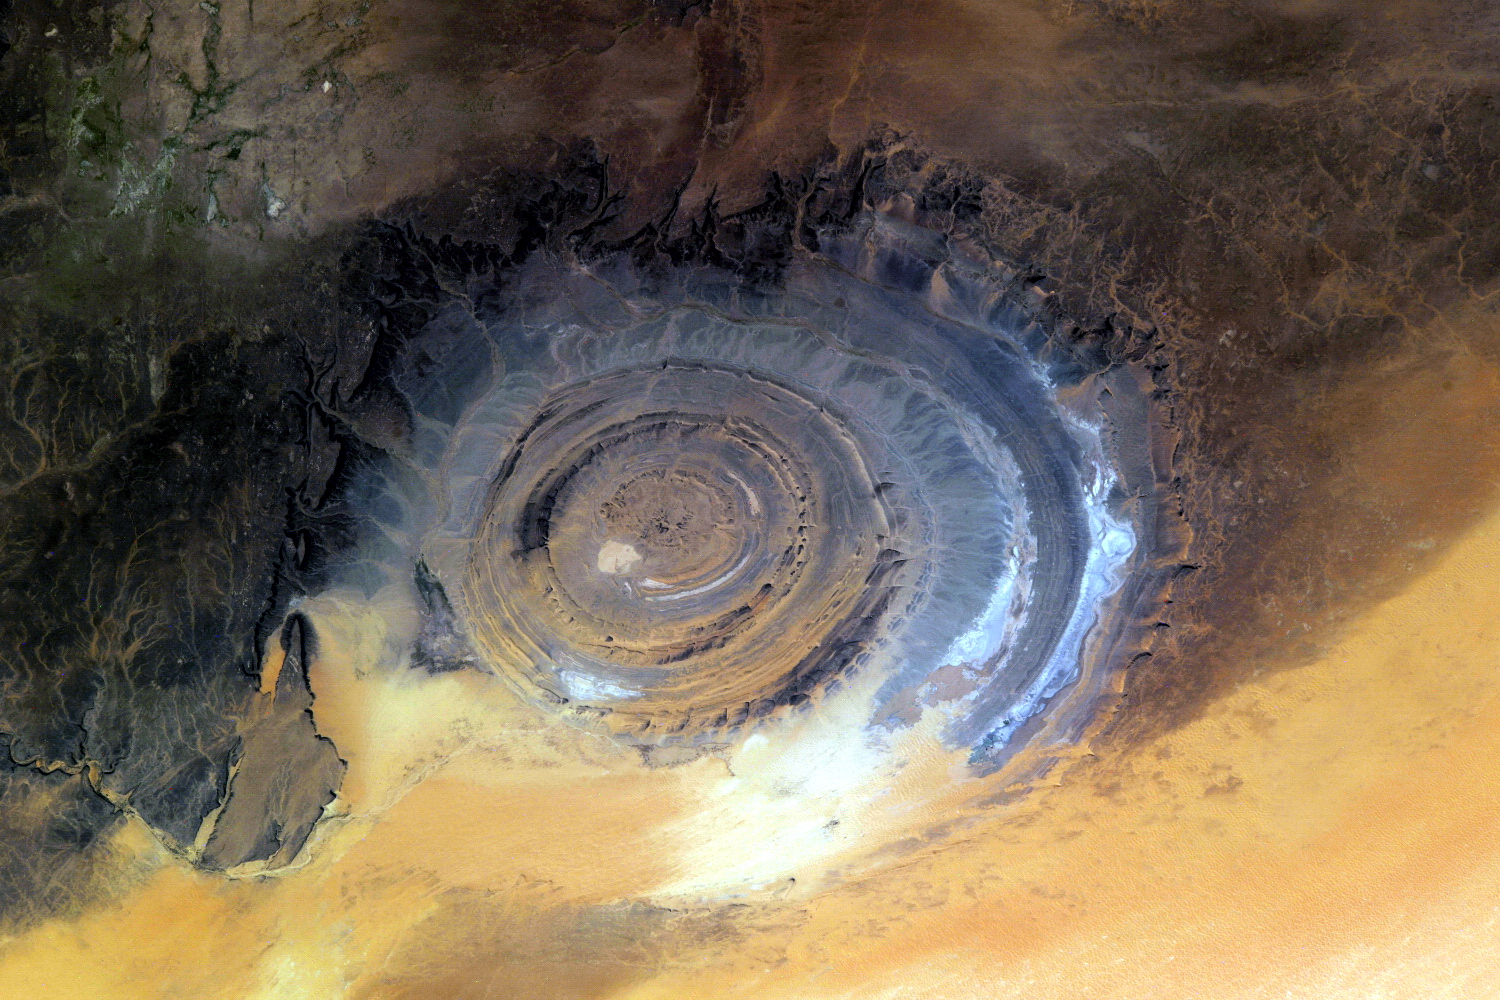 Планета земля пустыня. Структура ришат глаз Сахары. Ришат Мавритания. Ришат (глаз Сахары). Мавритания. Ришат Мавритания око земли.